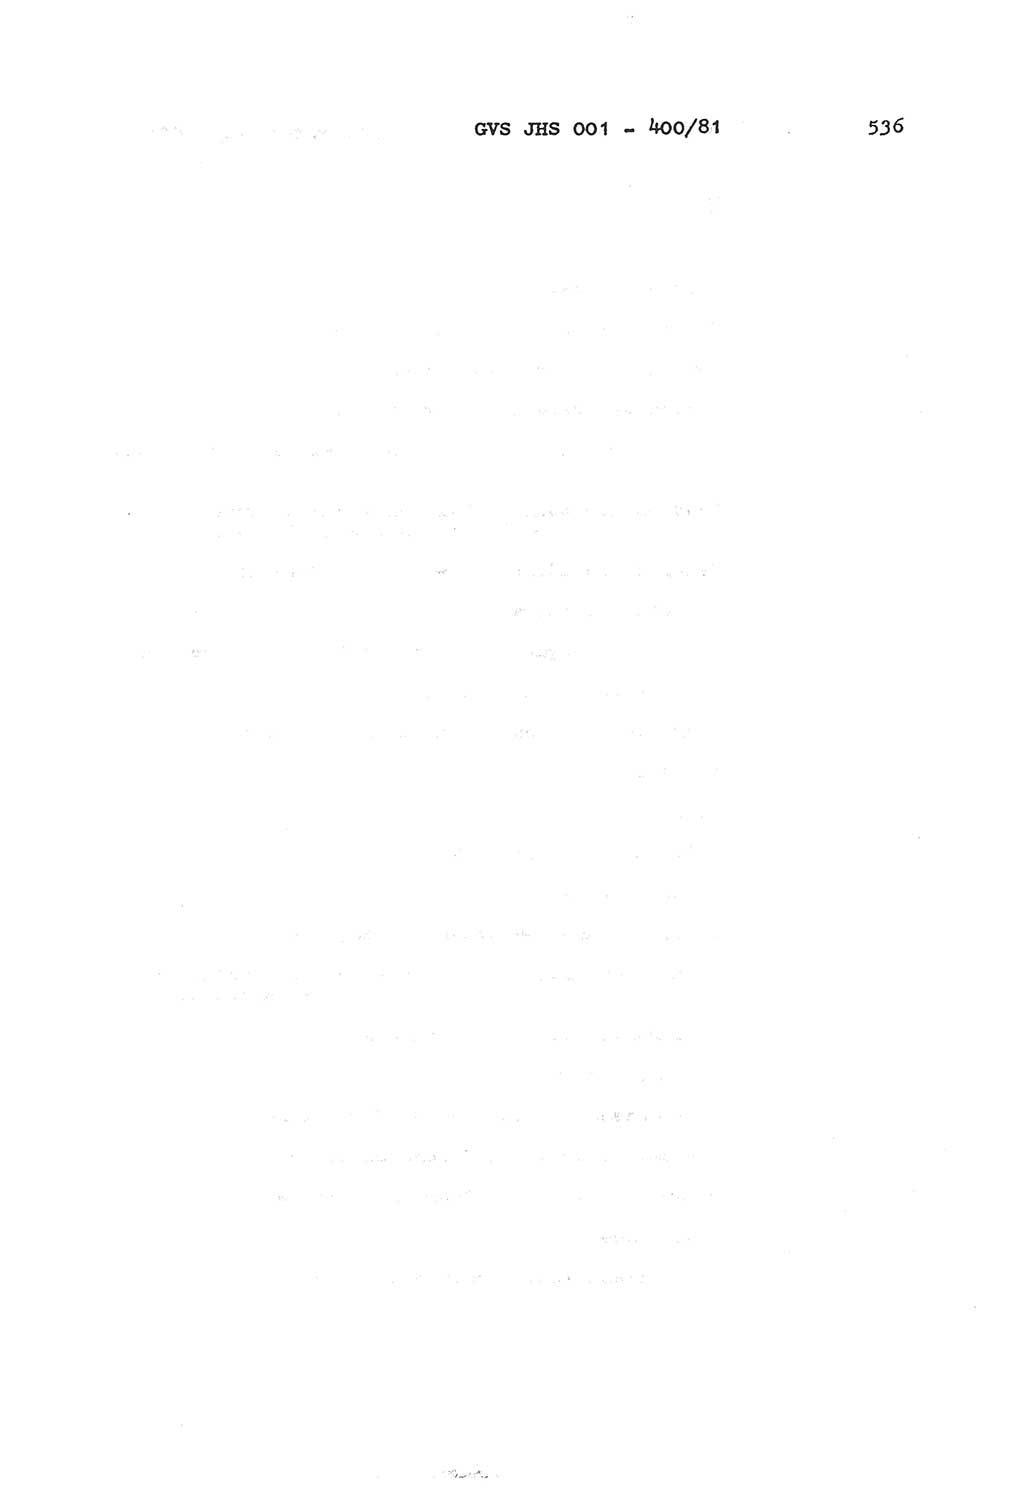 Wörterbuch der politisch-operativen Arbeit, Ministerium für Staatssicherheit (MfS) [Deutsche Demokratische Republik (DDR)], Juristische Hochschule (JHS), Geheime Verschlußsache (GVS) o001-400/81, Potsdam 1985, Blatt 536 (Wb. pol.-op. Arb. MfS DDR JHS GVS o001-400/81 1985, Bl. 536)